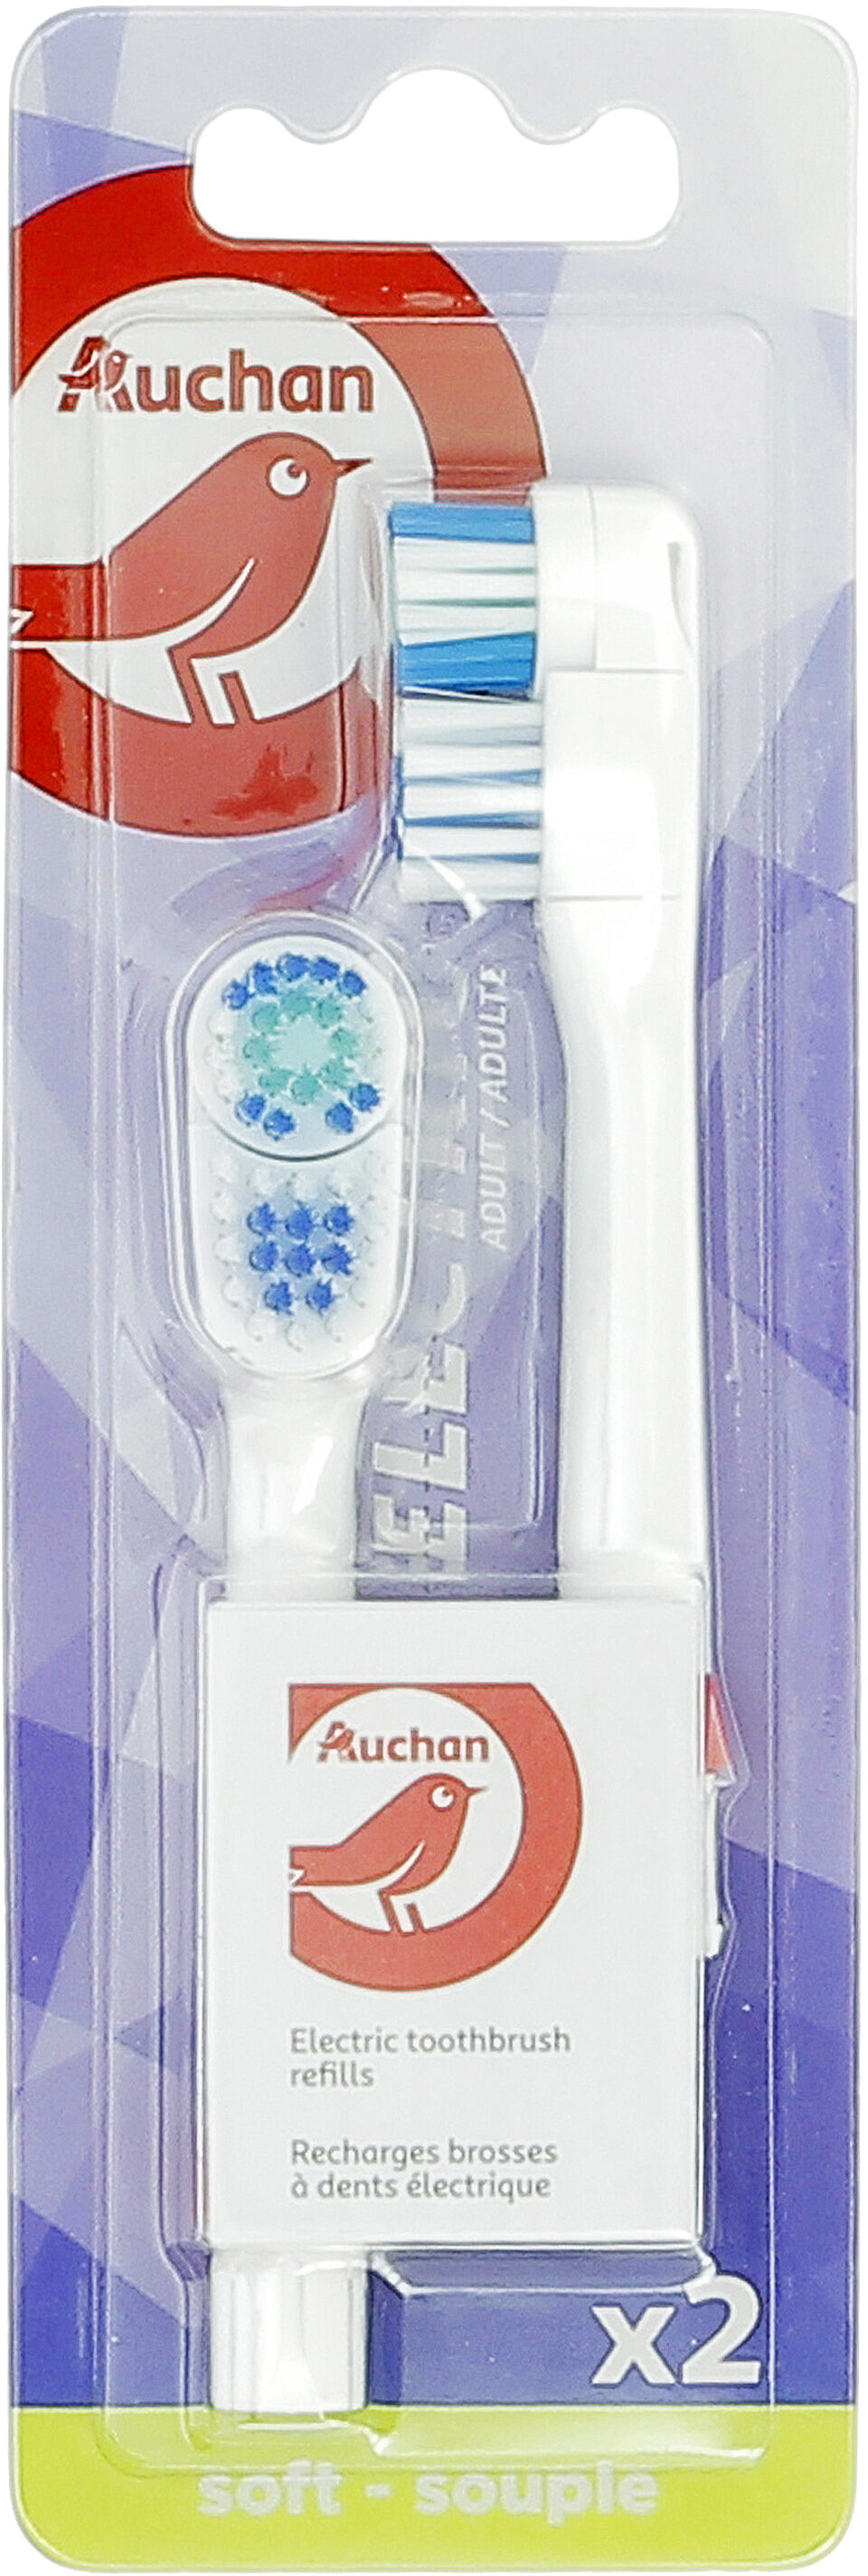 Recharges brosse à dents électrique - Produit - fr